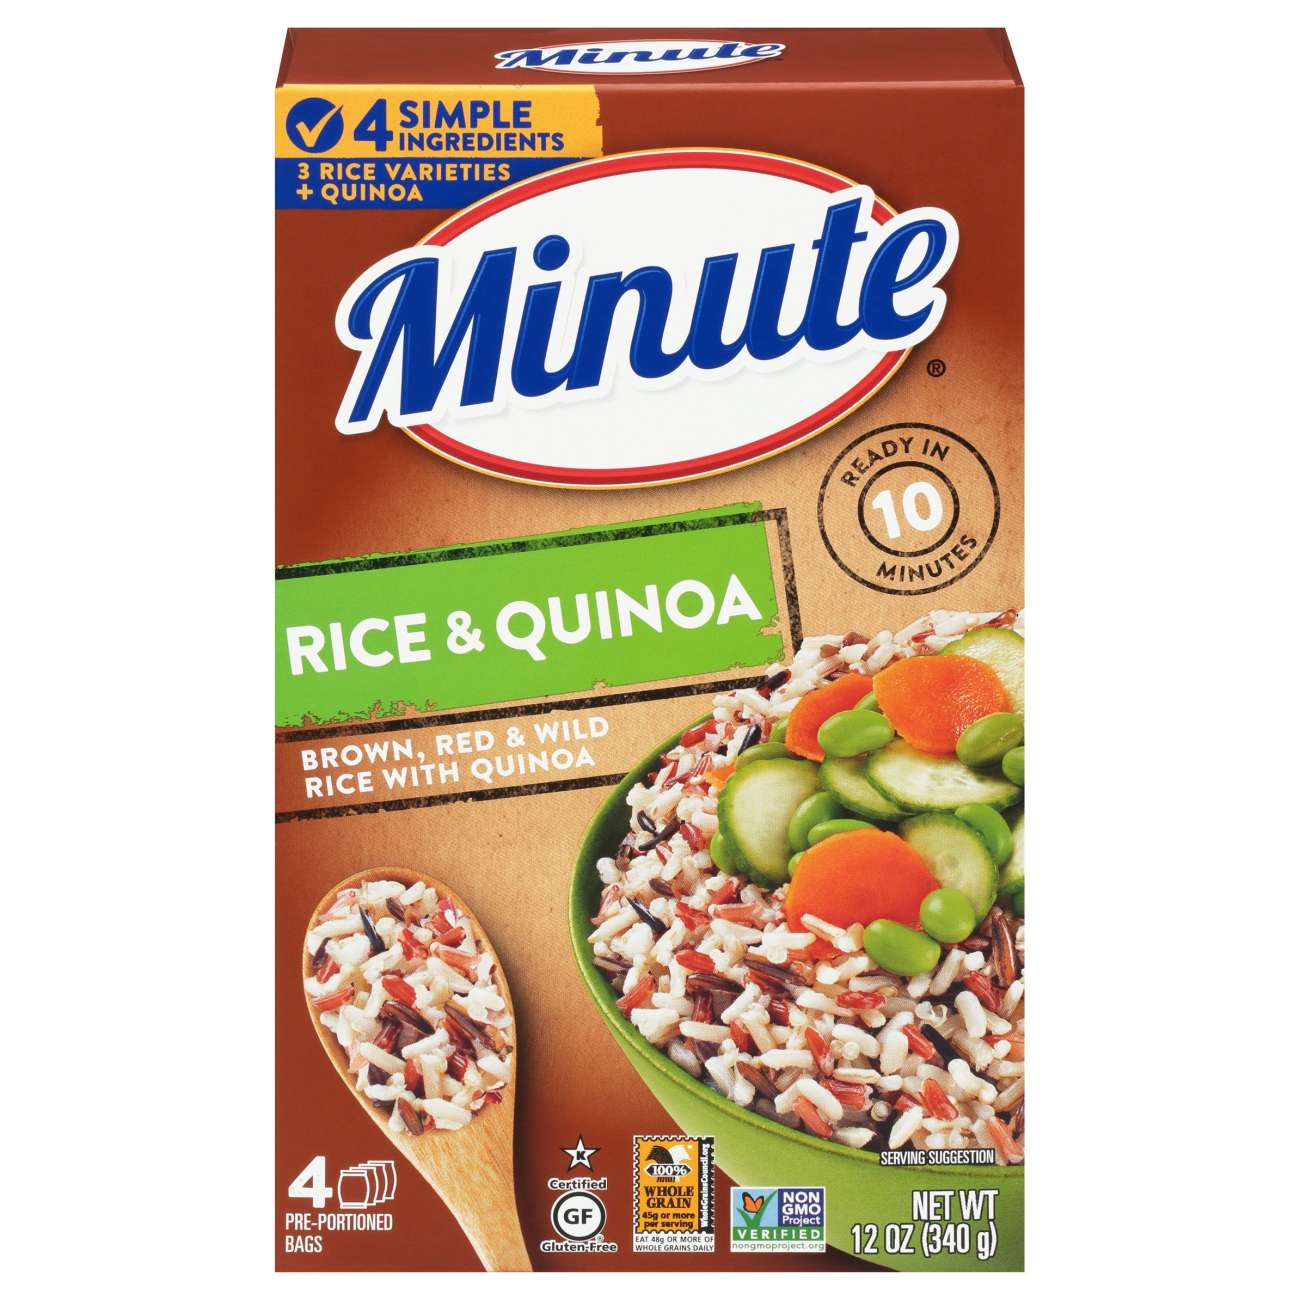 Minute Instant Rice & Quinoa; image 1 of 2